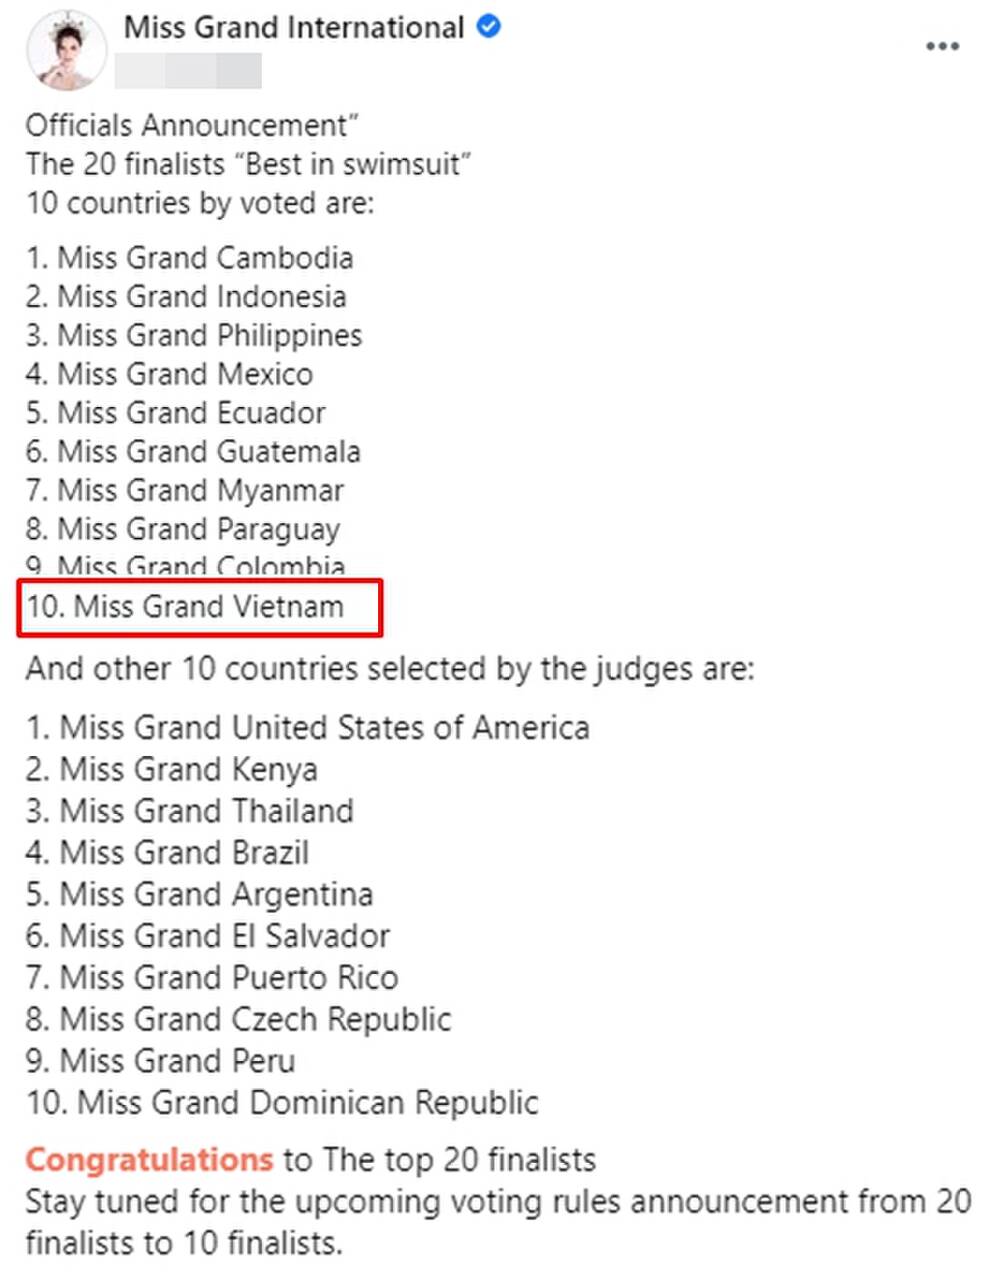 Miss Grand International vừa công bố danh sách 20 thí sinh có phần trình diễn áo tắm đẹp nhất trong mùa giải năm nay